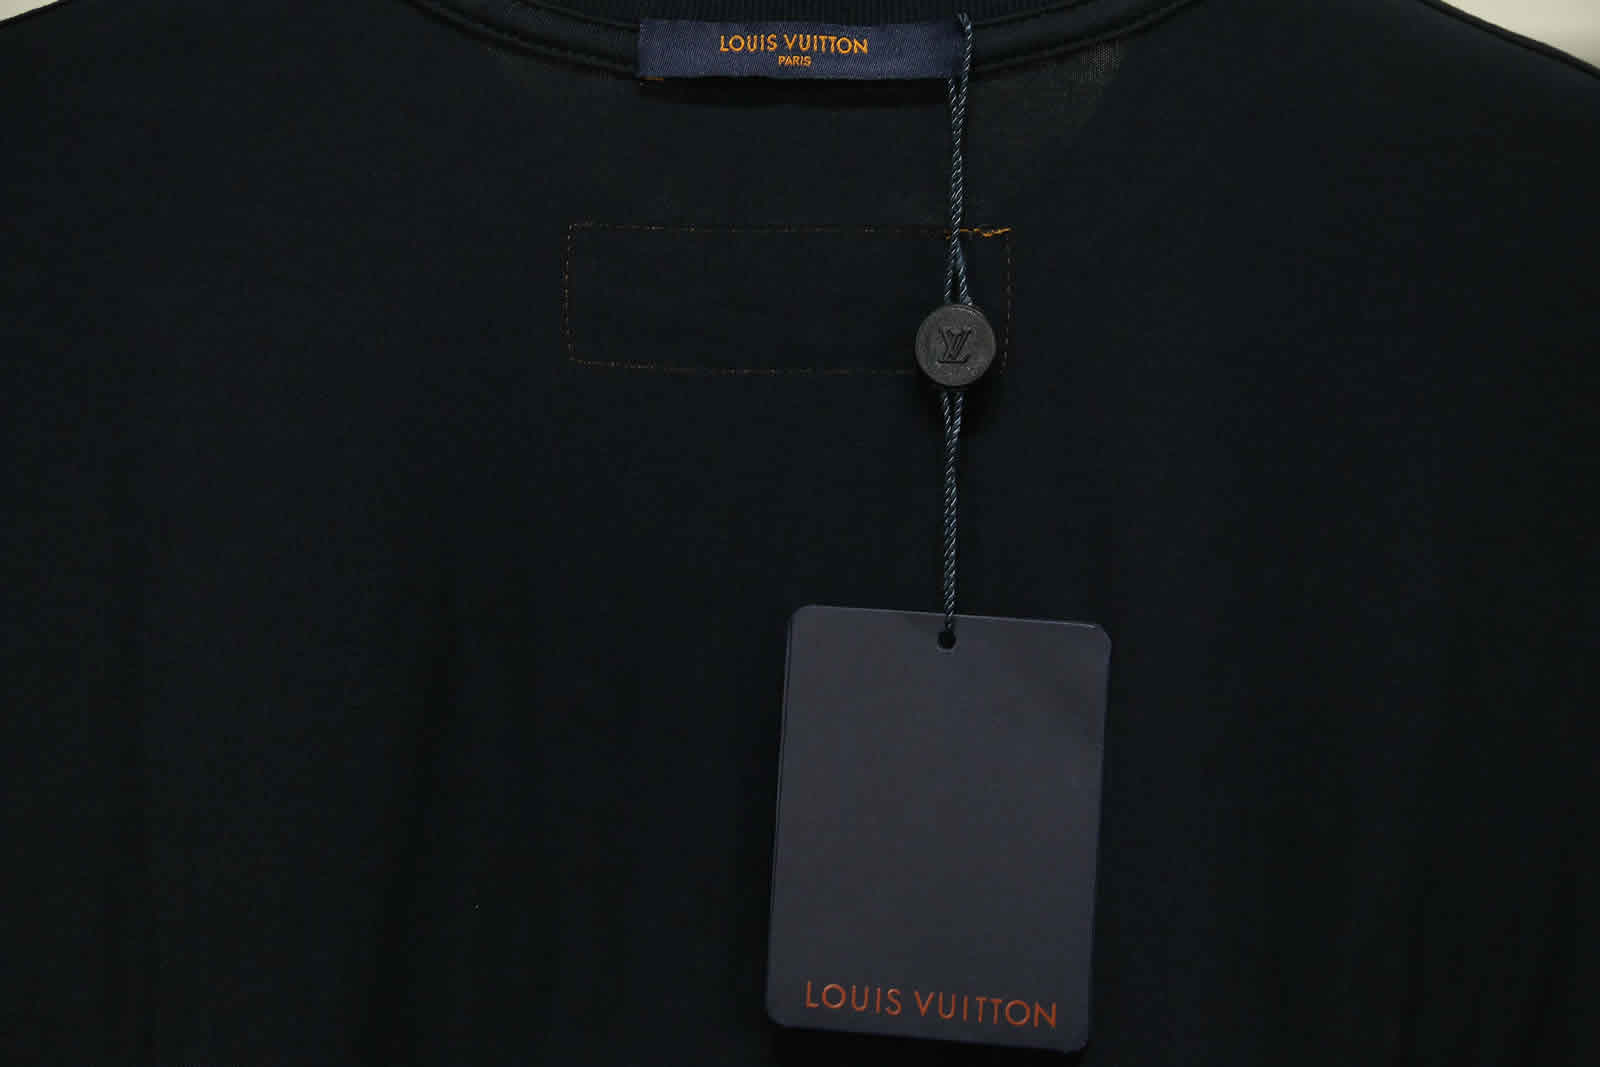 Louis Vuitton Catwalk T Shirt 2021 17 - kickbulk.cc